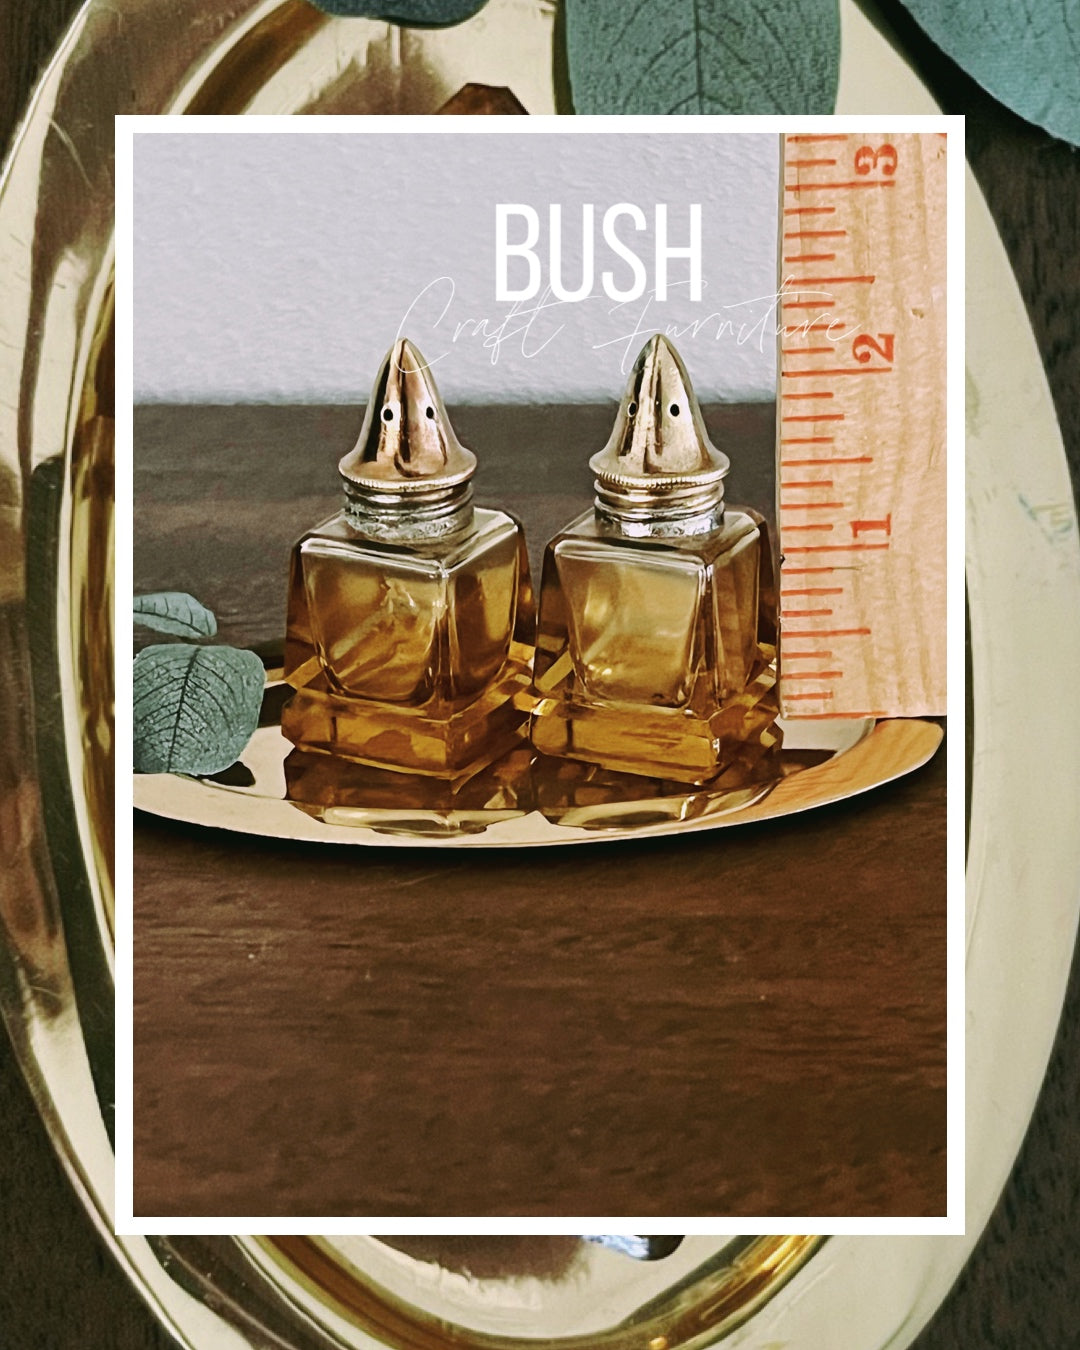 Vintage Amber Glass salt & pepper shakers - Bush Craft Furniture